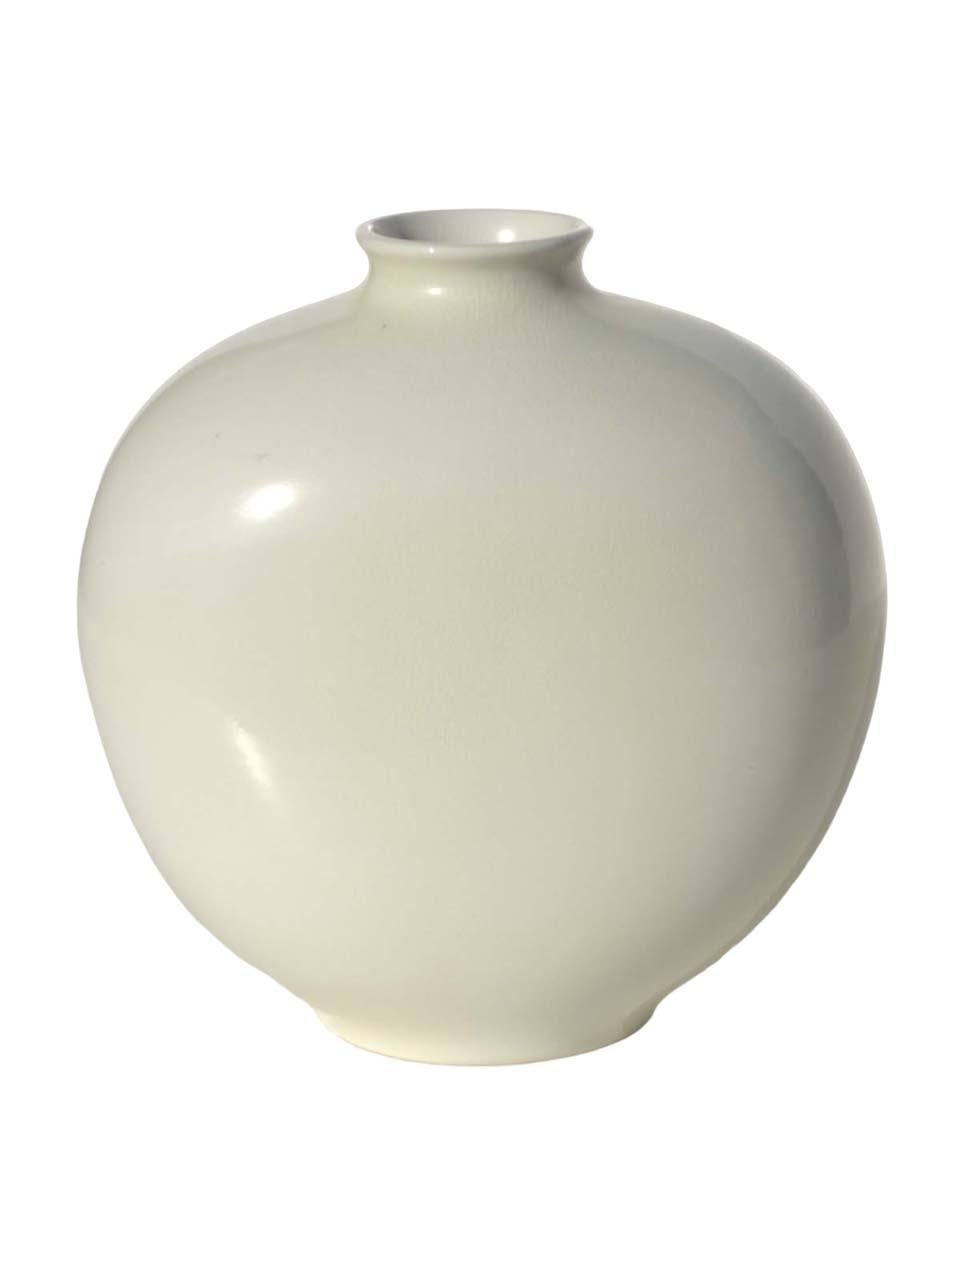 Giovanni Gariboldi
Ginori _ San Cristoforo
1940s

Vase en céramique blanche
Décoration 